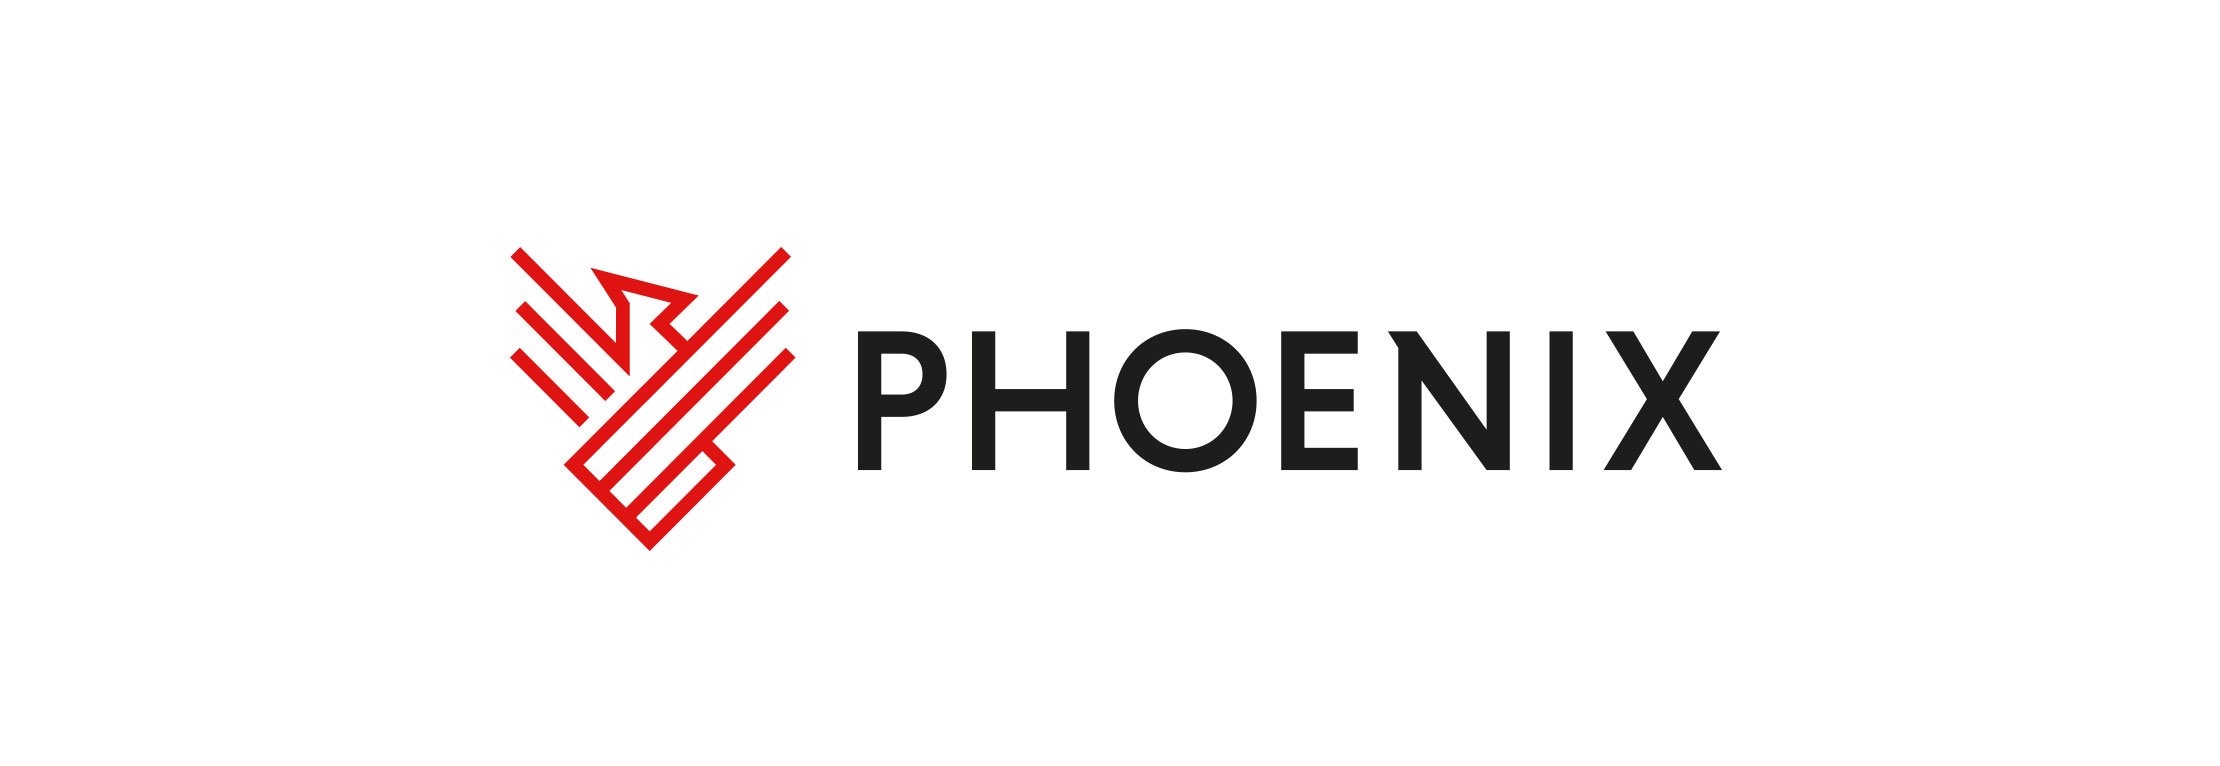 Phoenix-1